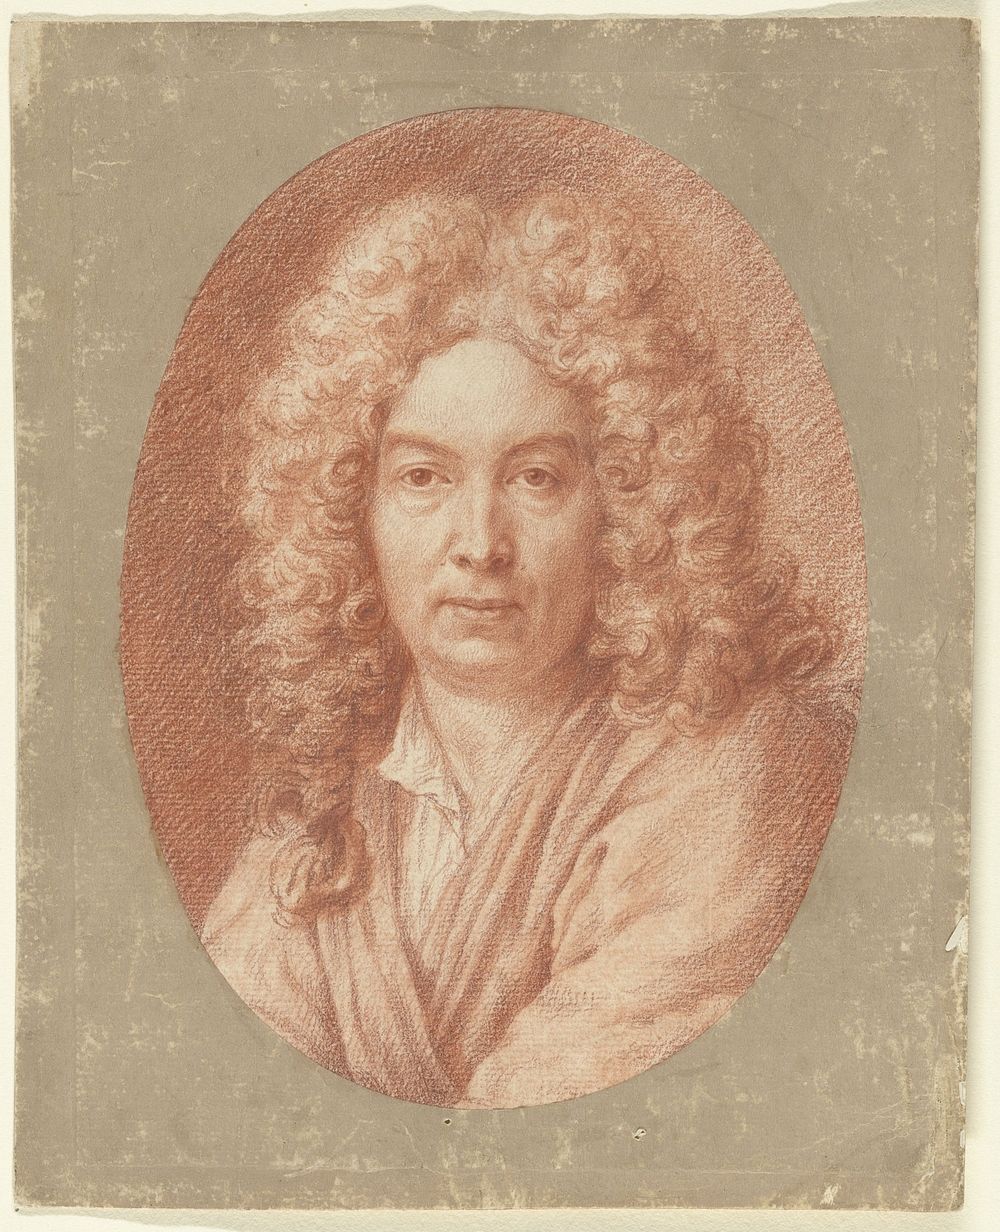 Zelfportret (1683 - 1733) by Bernard Picart